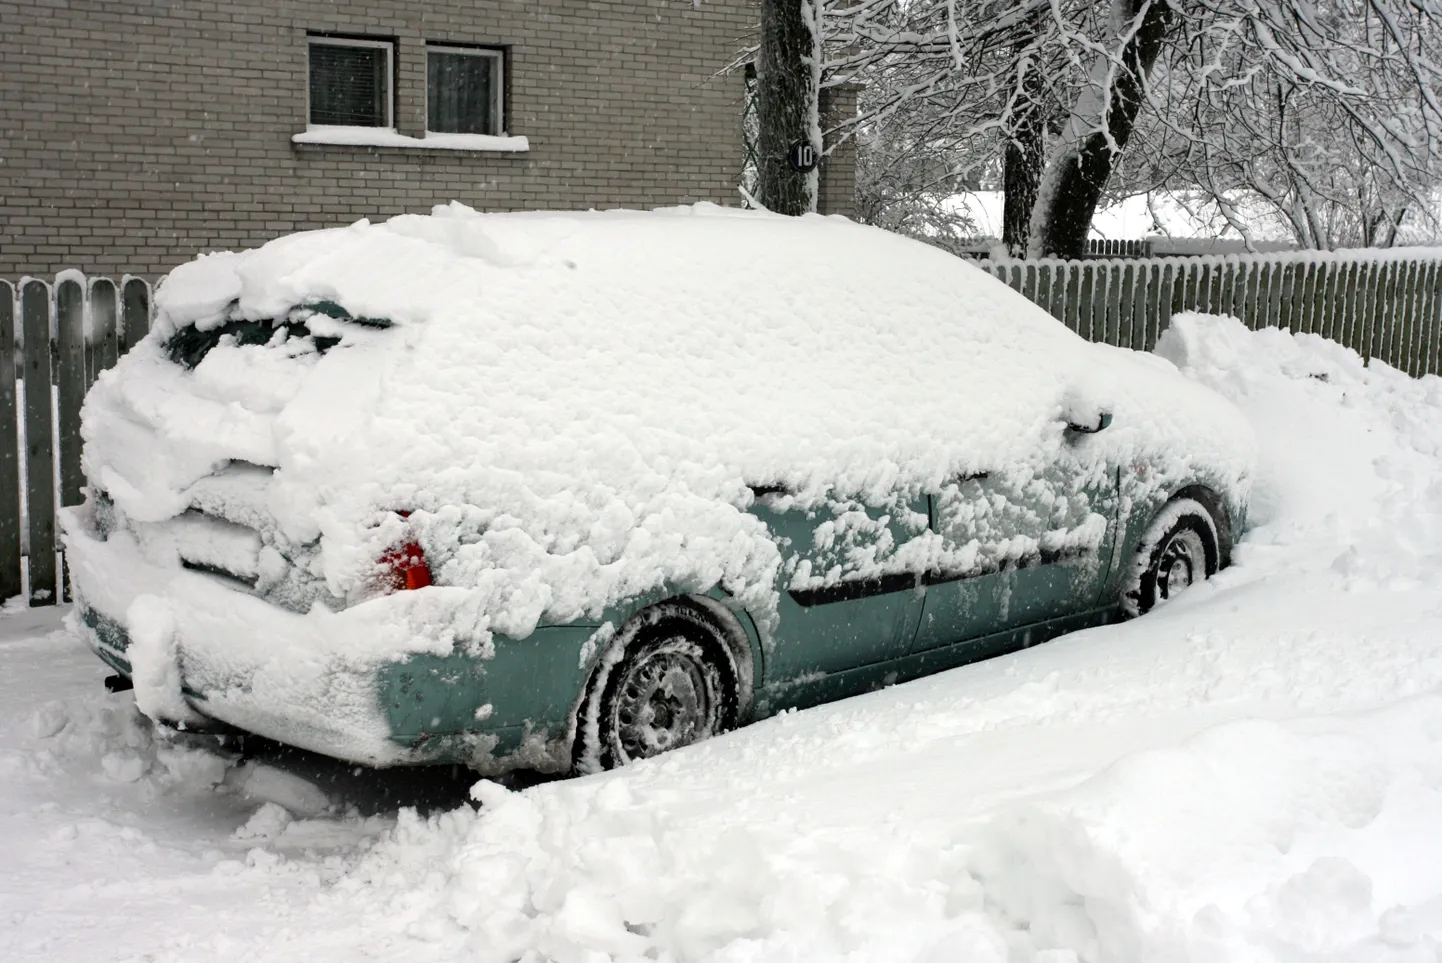 Lume alla mattunud auto Tallinnas.